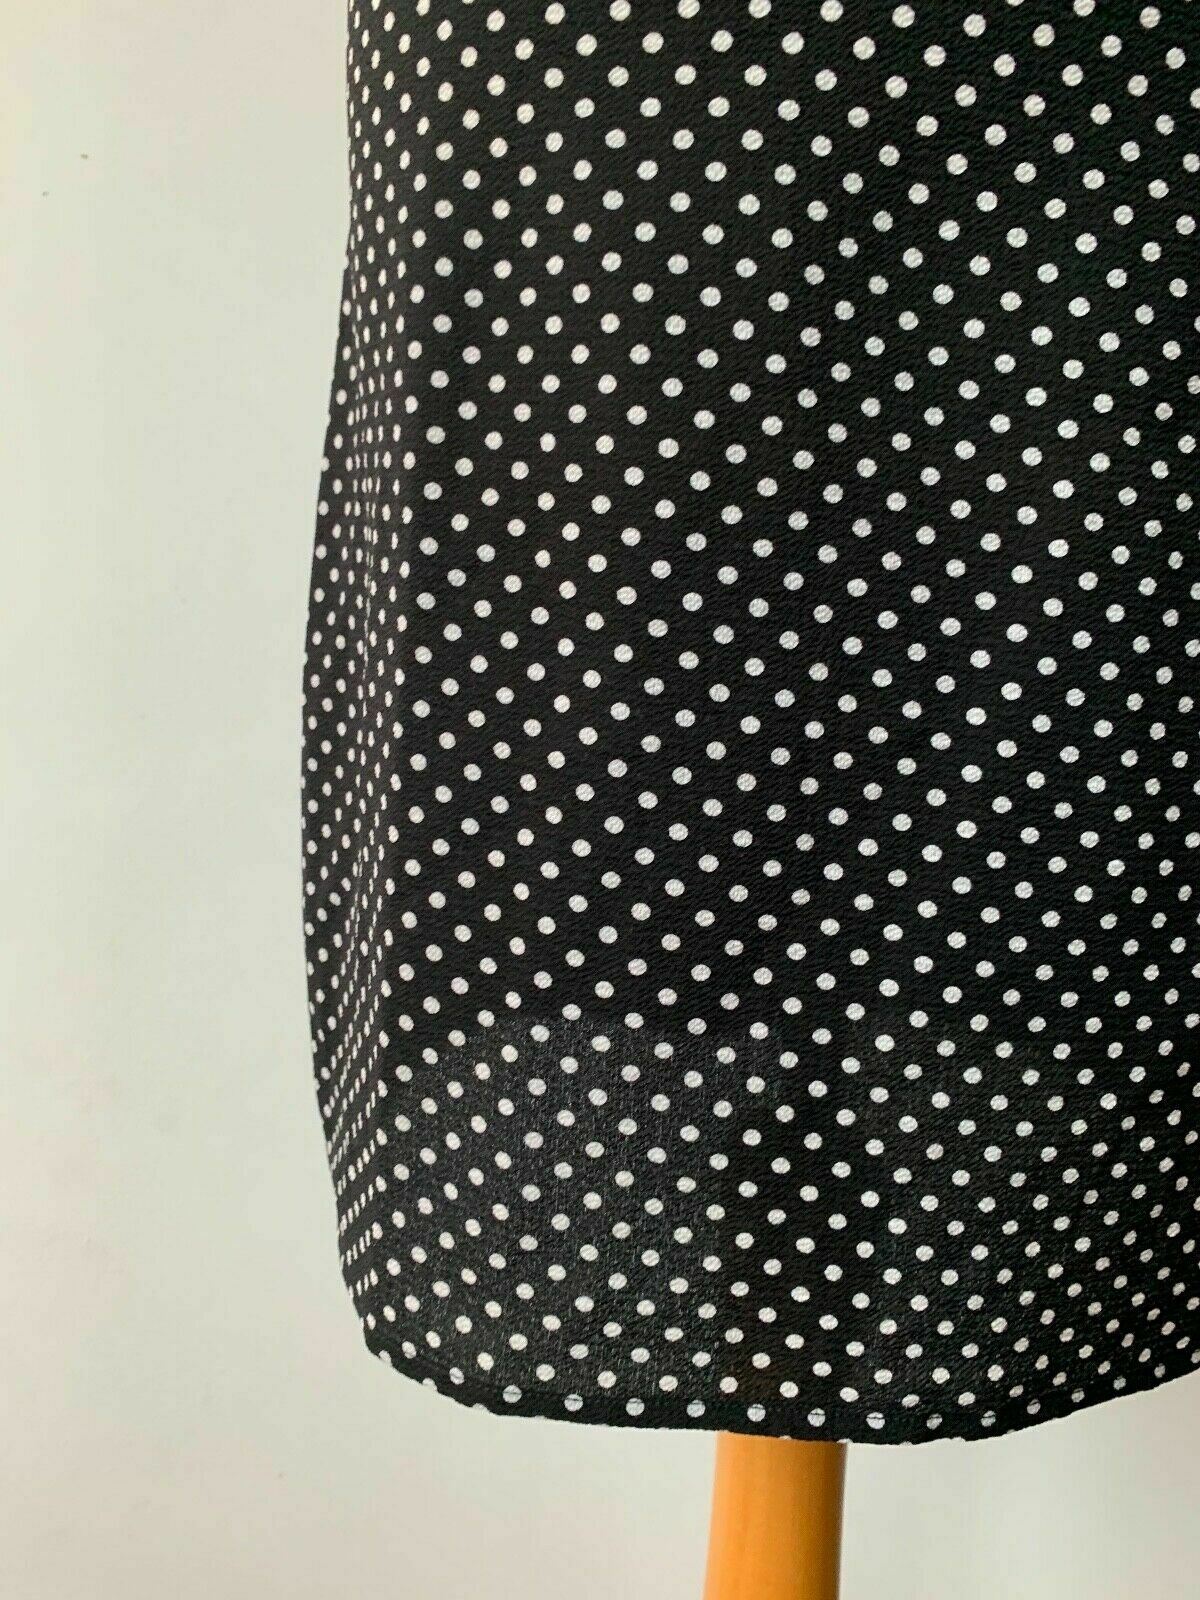 Brave Soul Strappy Mini Dress Size S Black Polka Dot